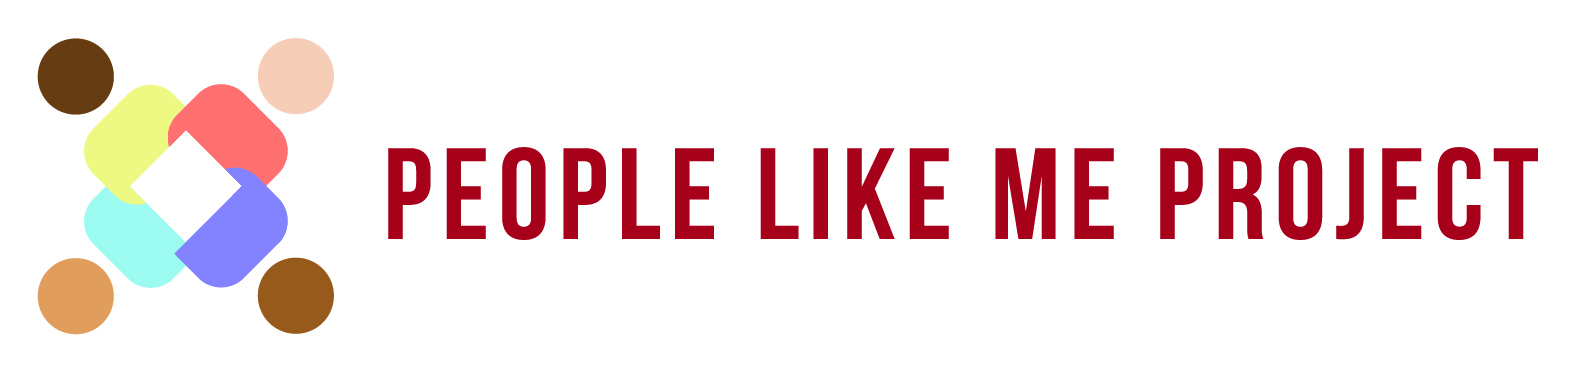 People Like Me Project, Inc logo